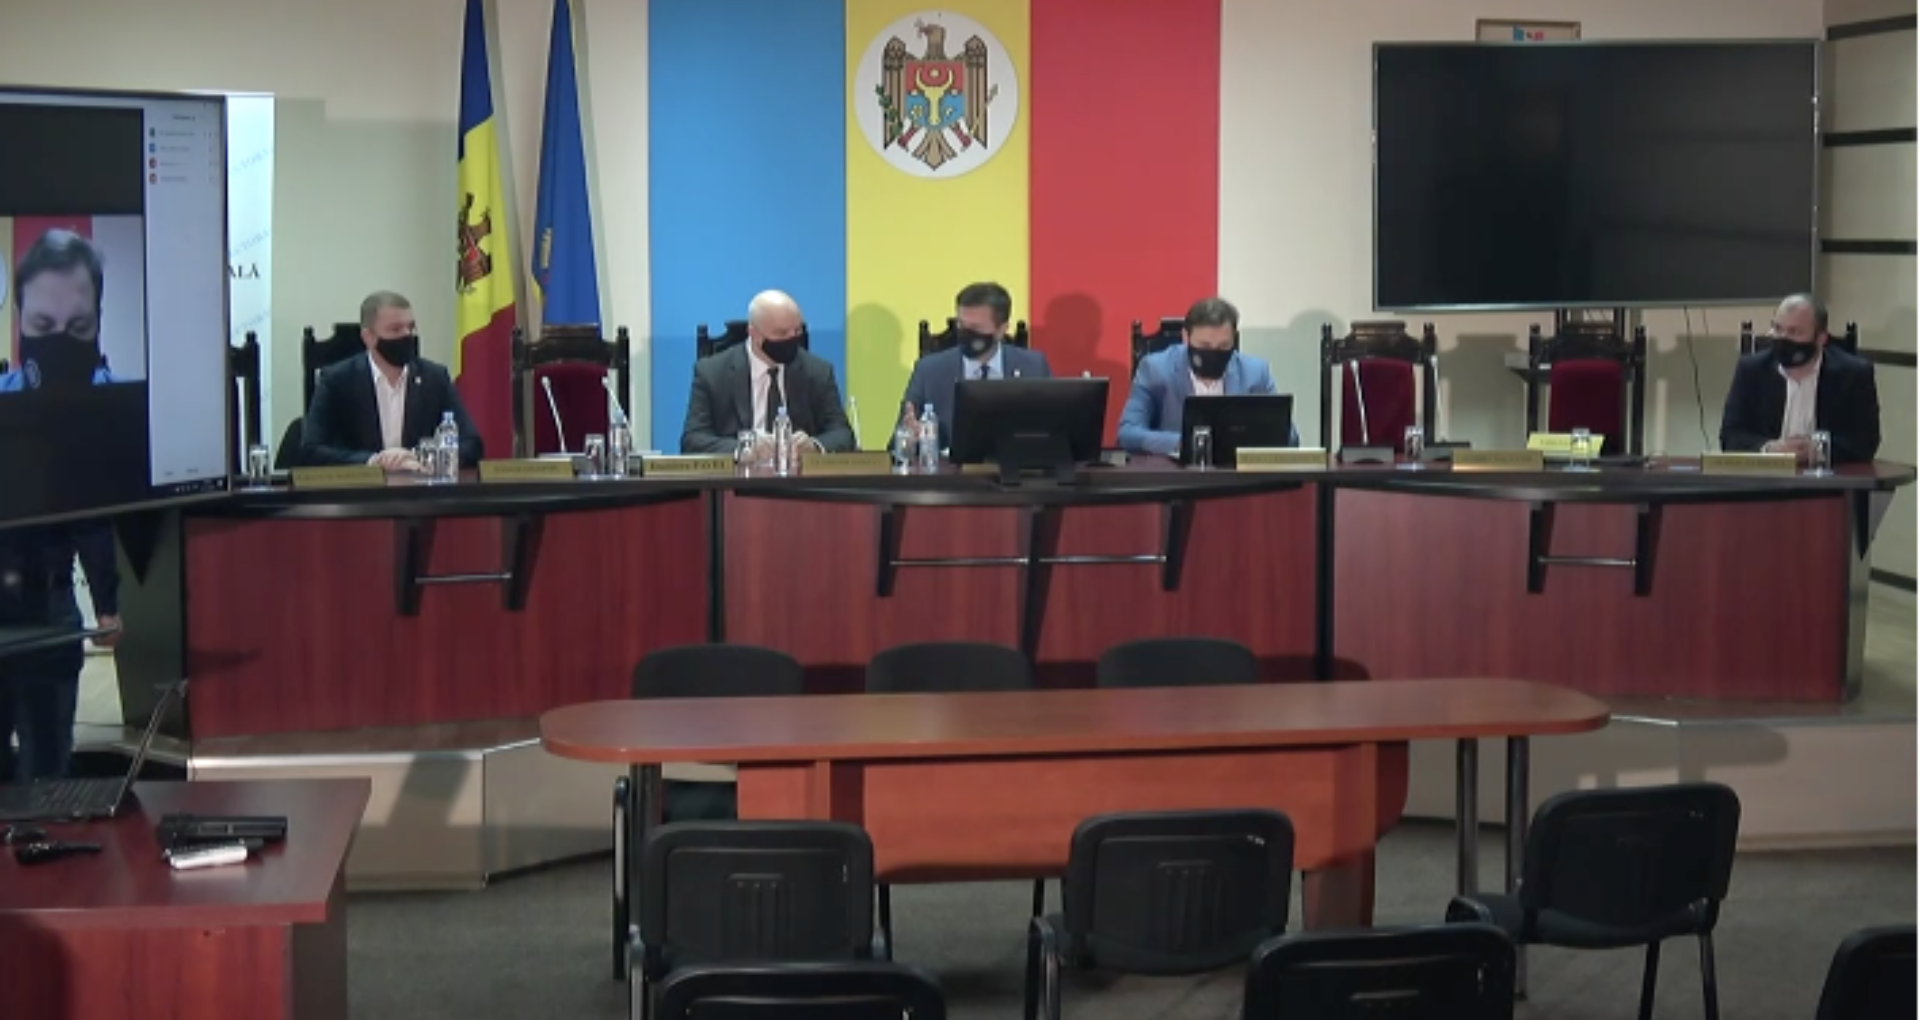 CEC a anulat şedinţa în care urma să fie examinată sesizarea depusă de PAS privind sancționarea lui Dodon. Reacţia Olesei Stamate